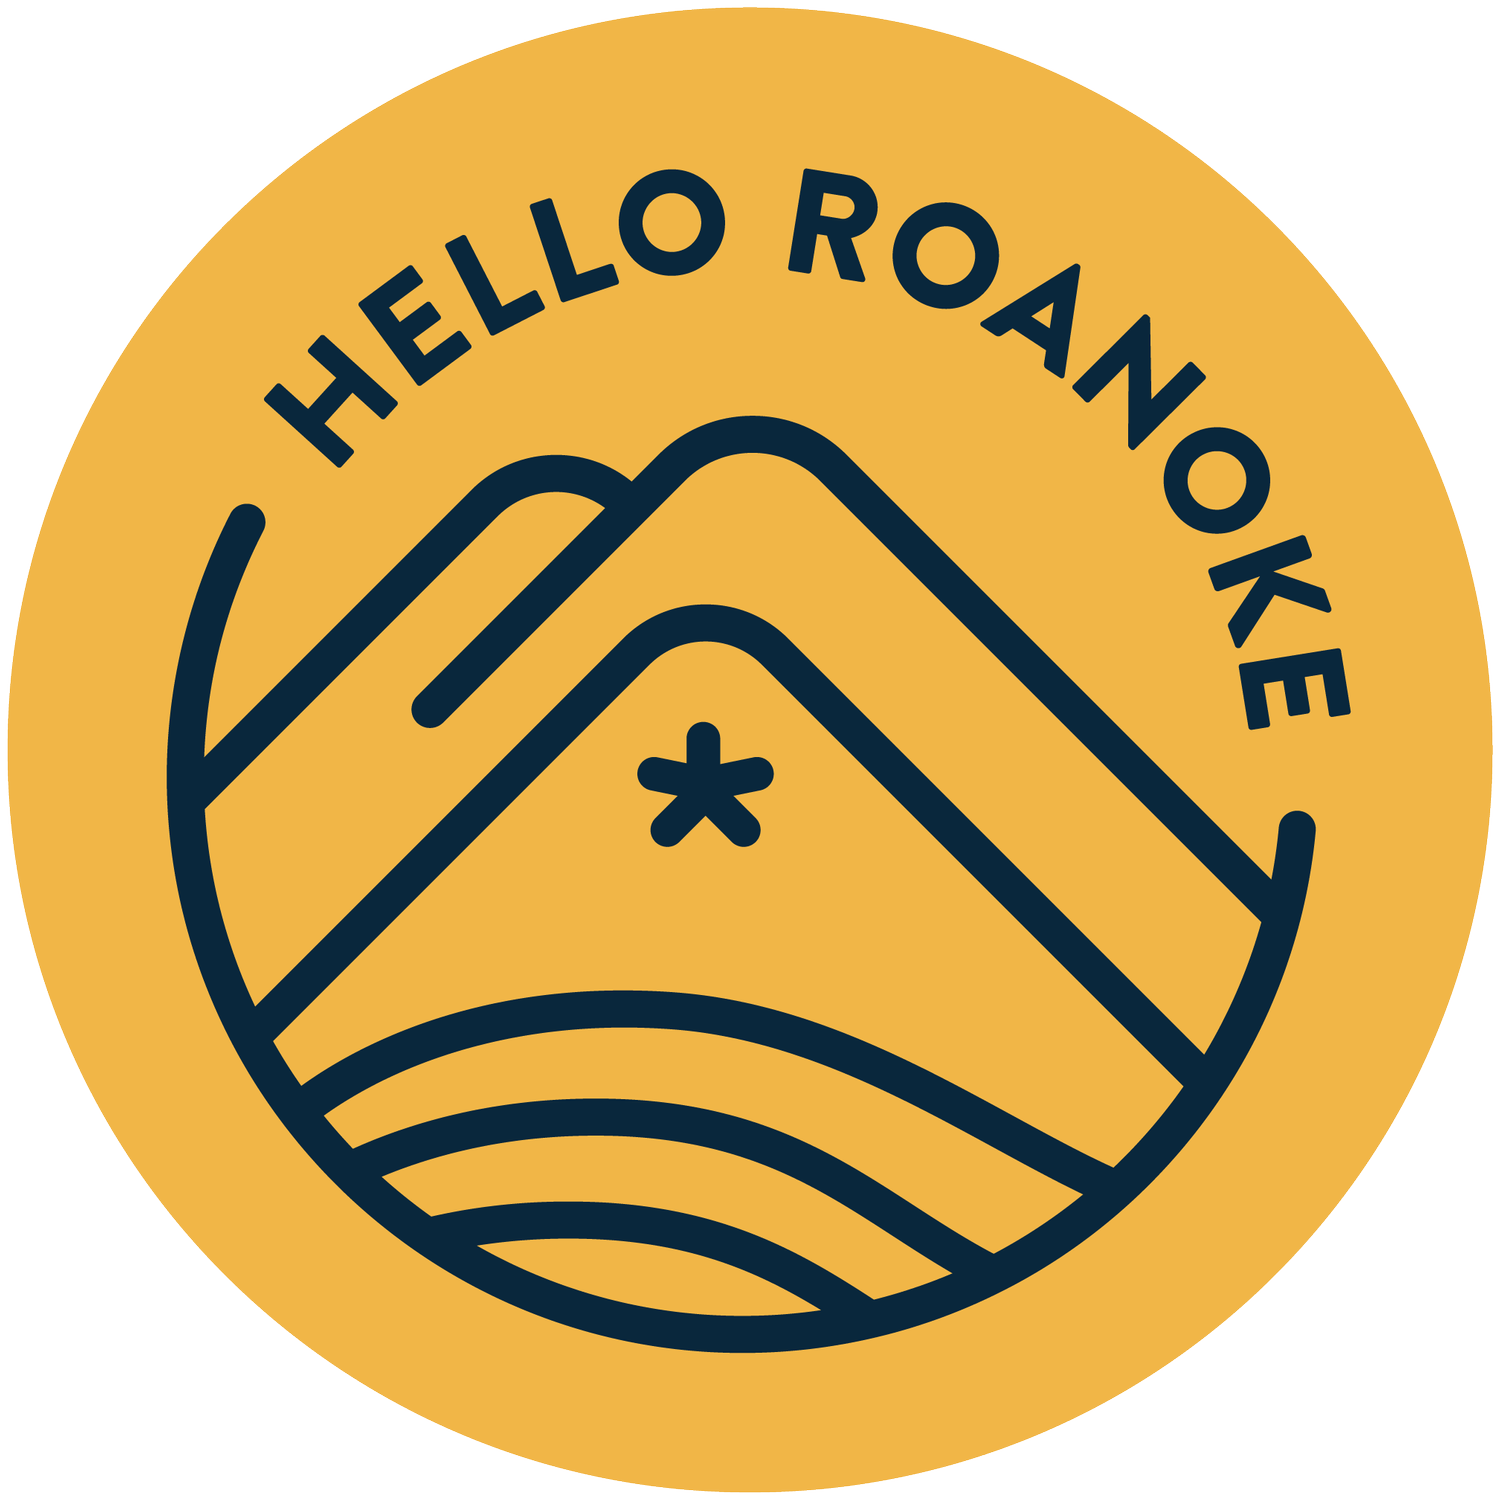 Hello Roanoke